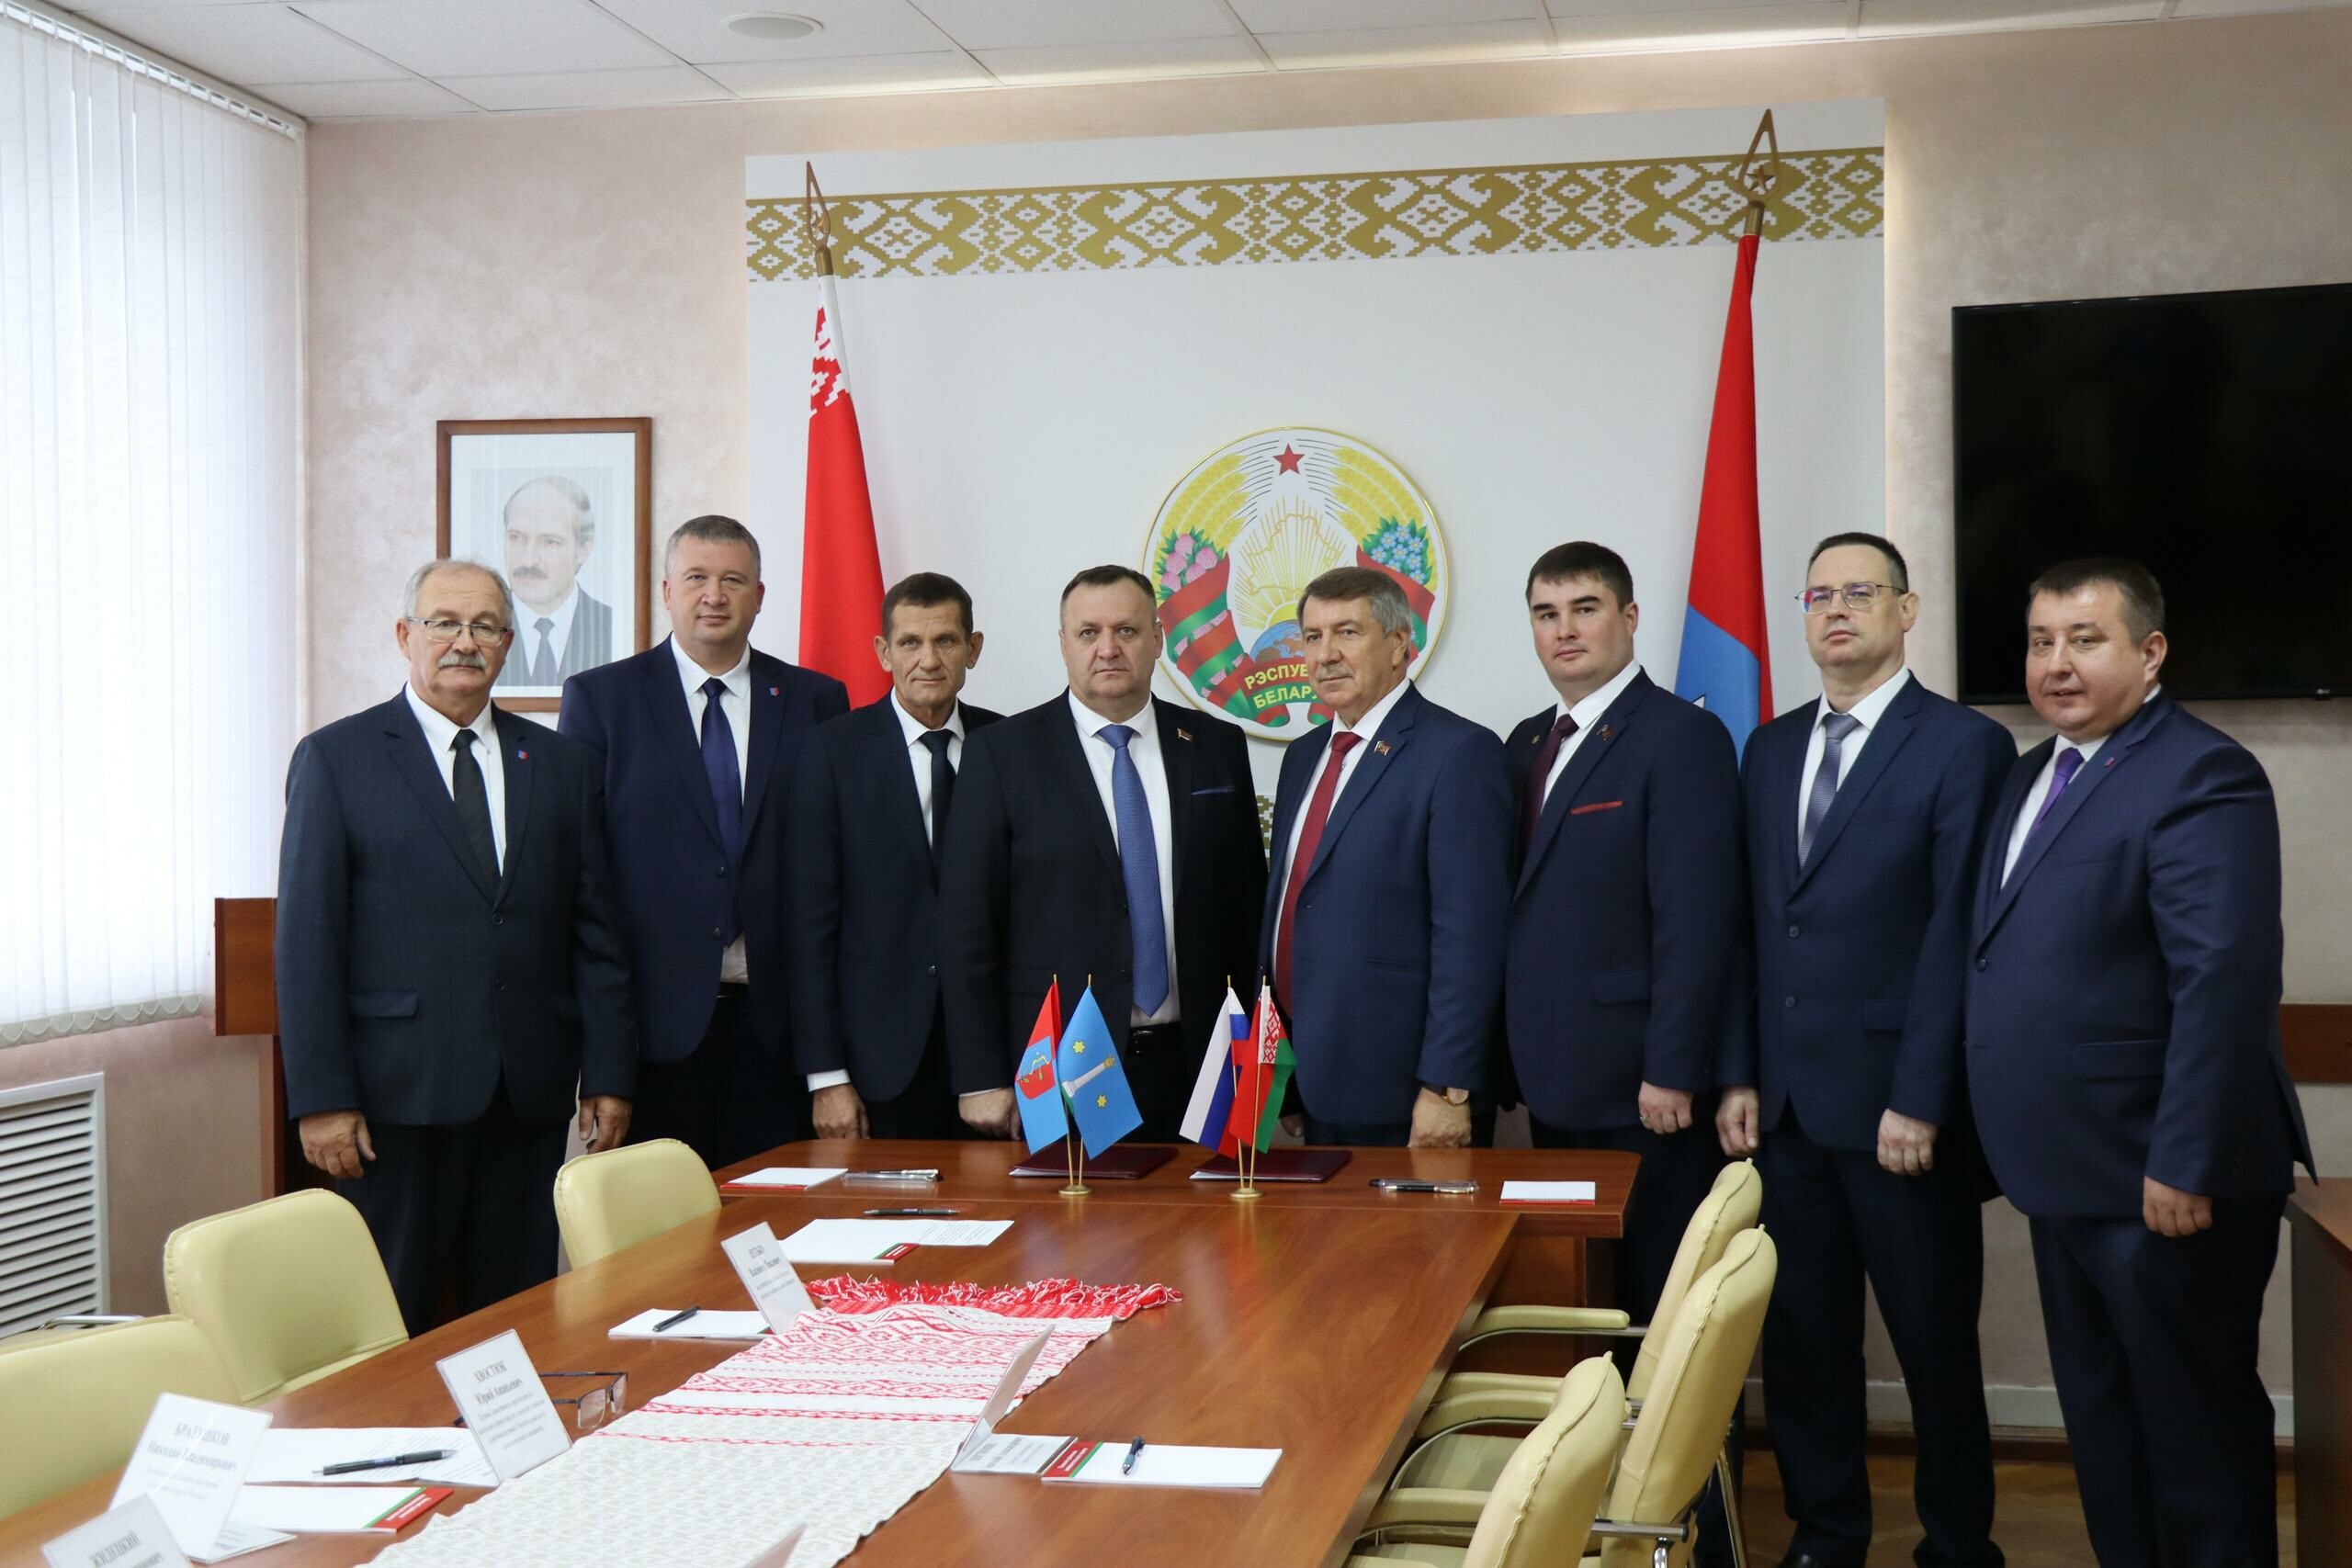 Подписано соглашение о сотрудничестве между Советом депутатов Коломны и Пинским Республики Беларусь